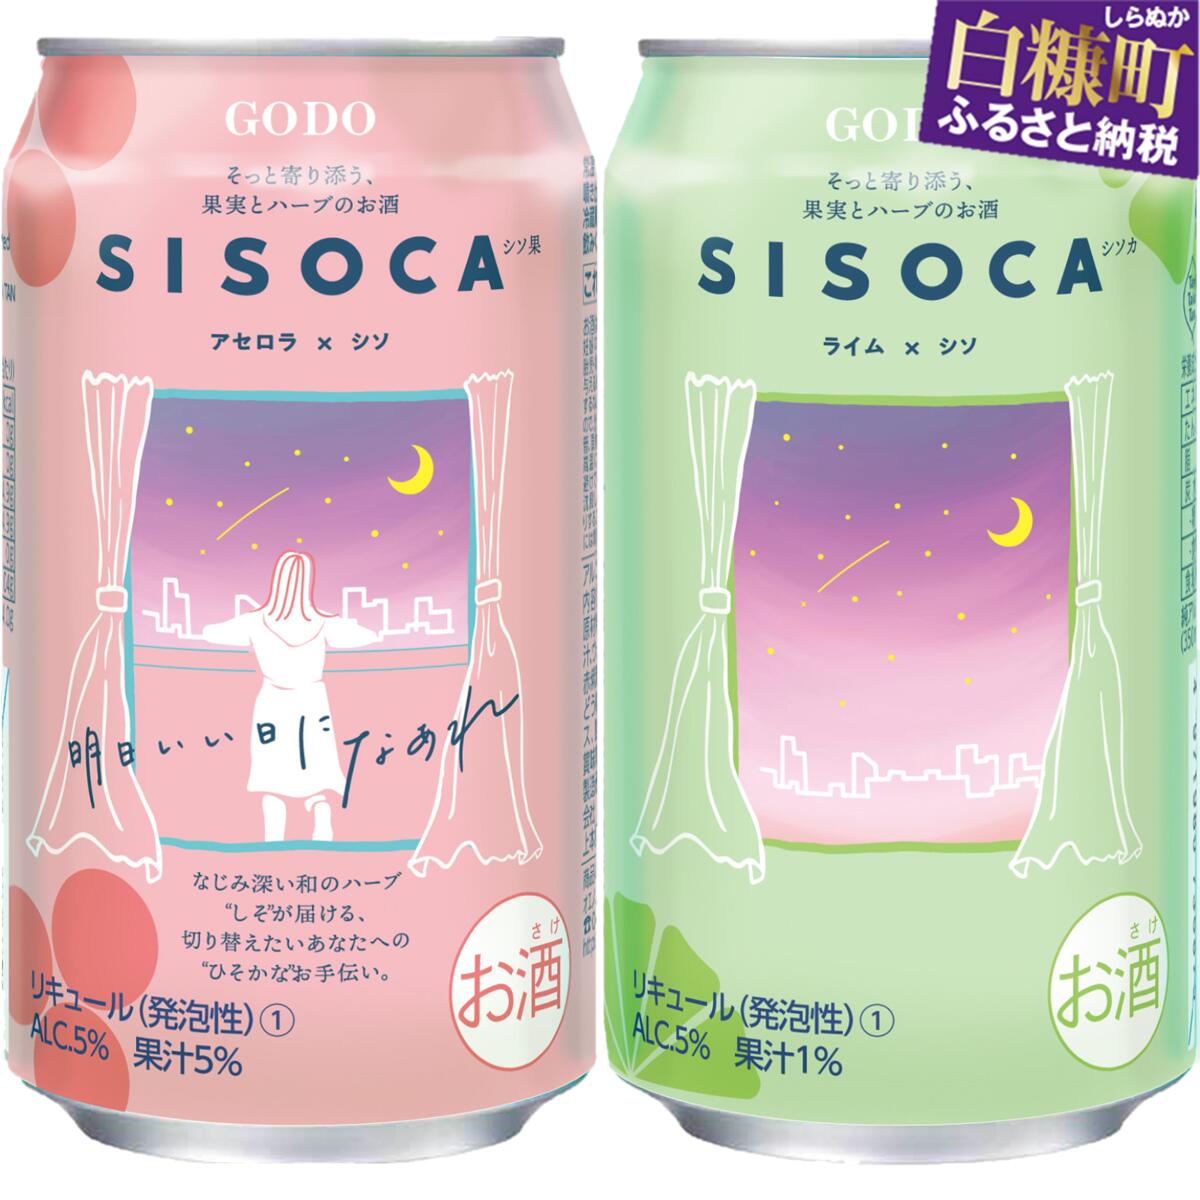 「SISOCA アセロラ×シソ」×「SISOCA ライム×シソ」[350ml×各24缶 計48缶]